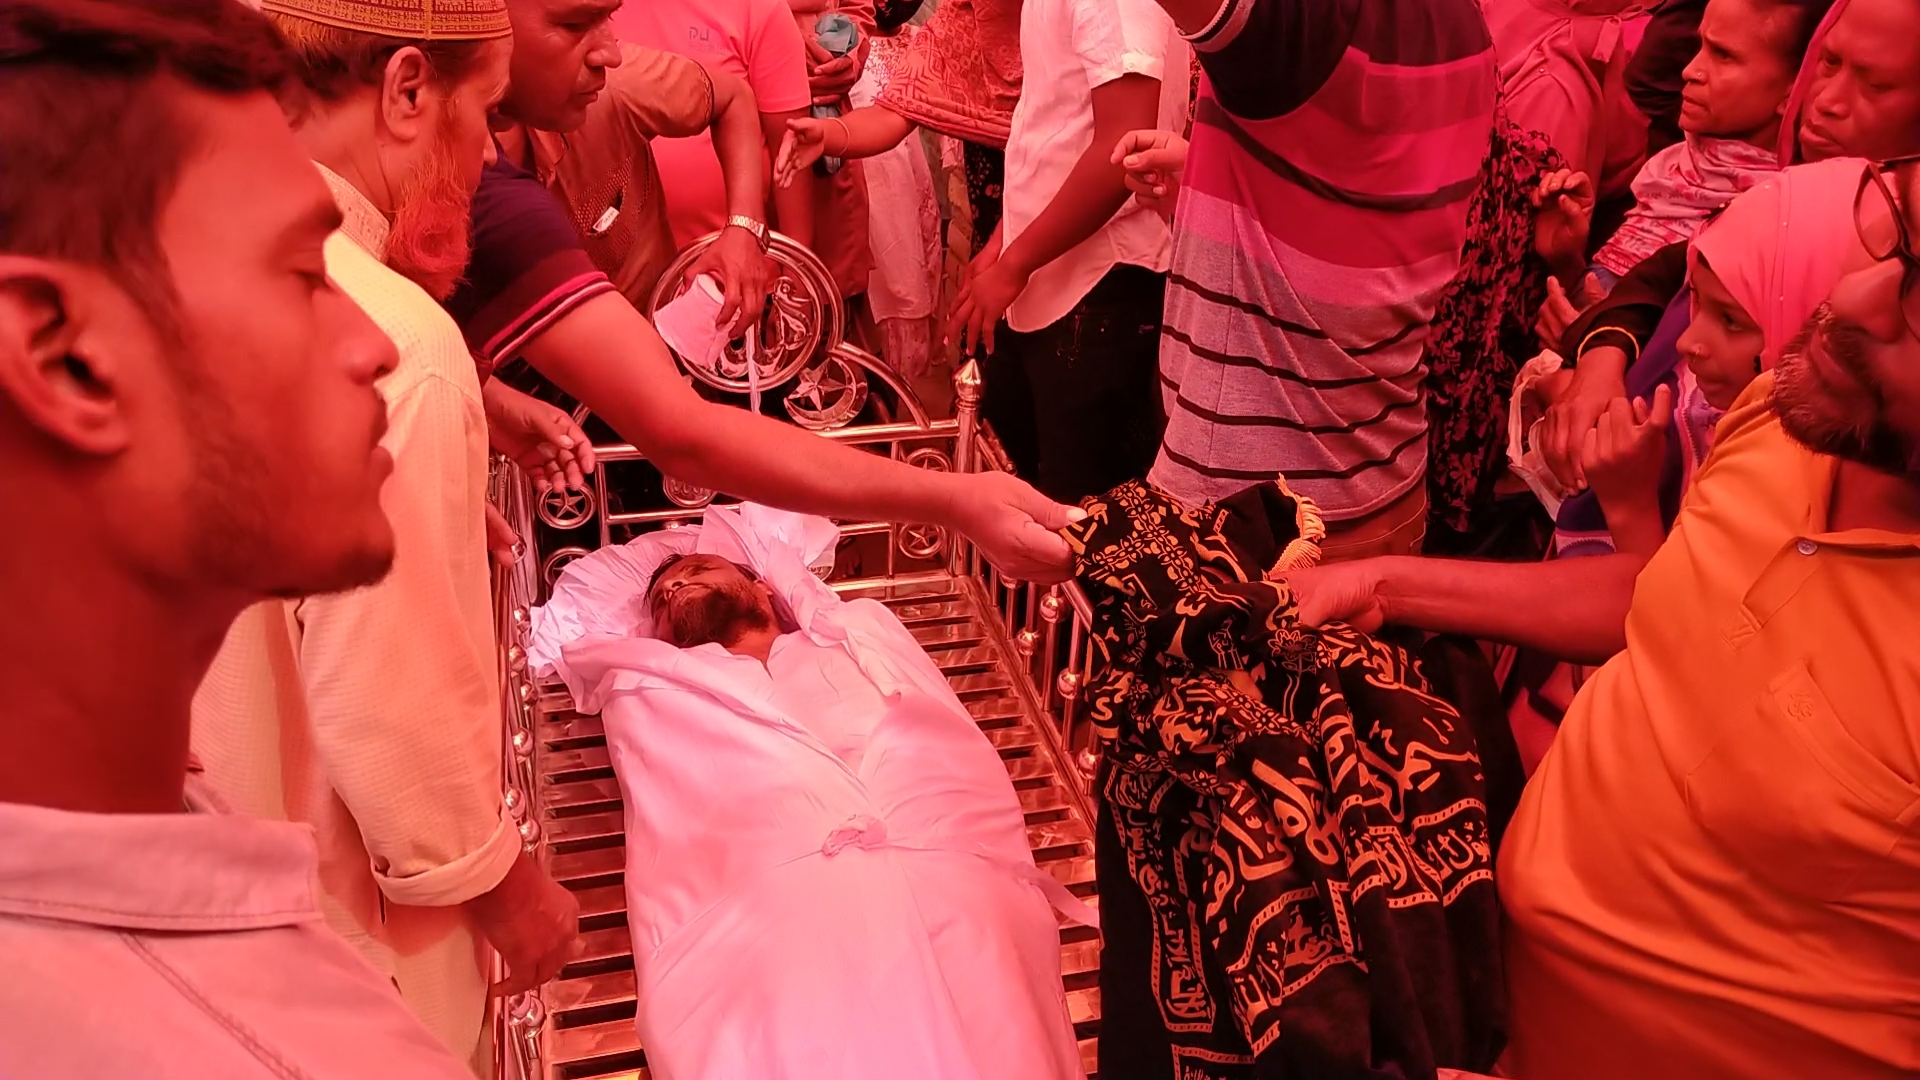 গাংনীতে ভ্যান উল্টে মুরগী ব্যবসায়ী নিহত : ছেলে আহত